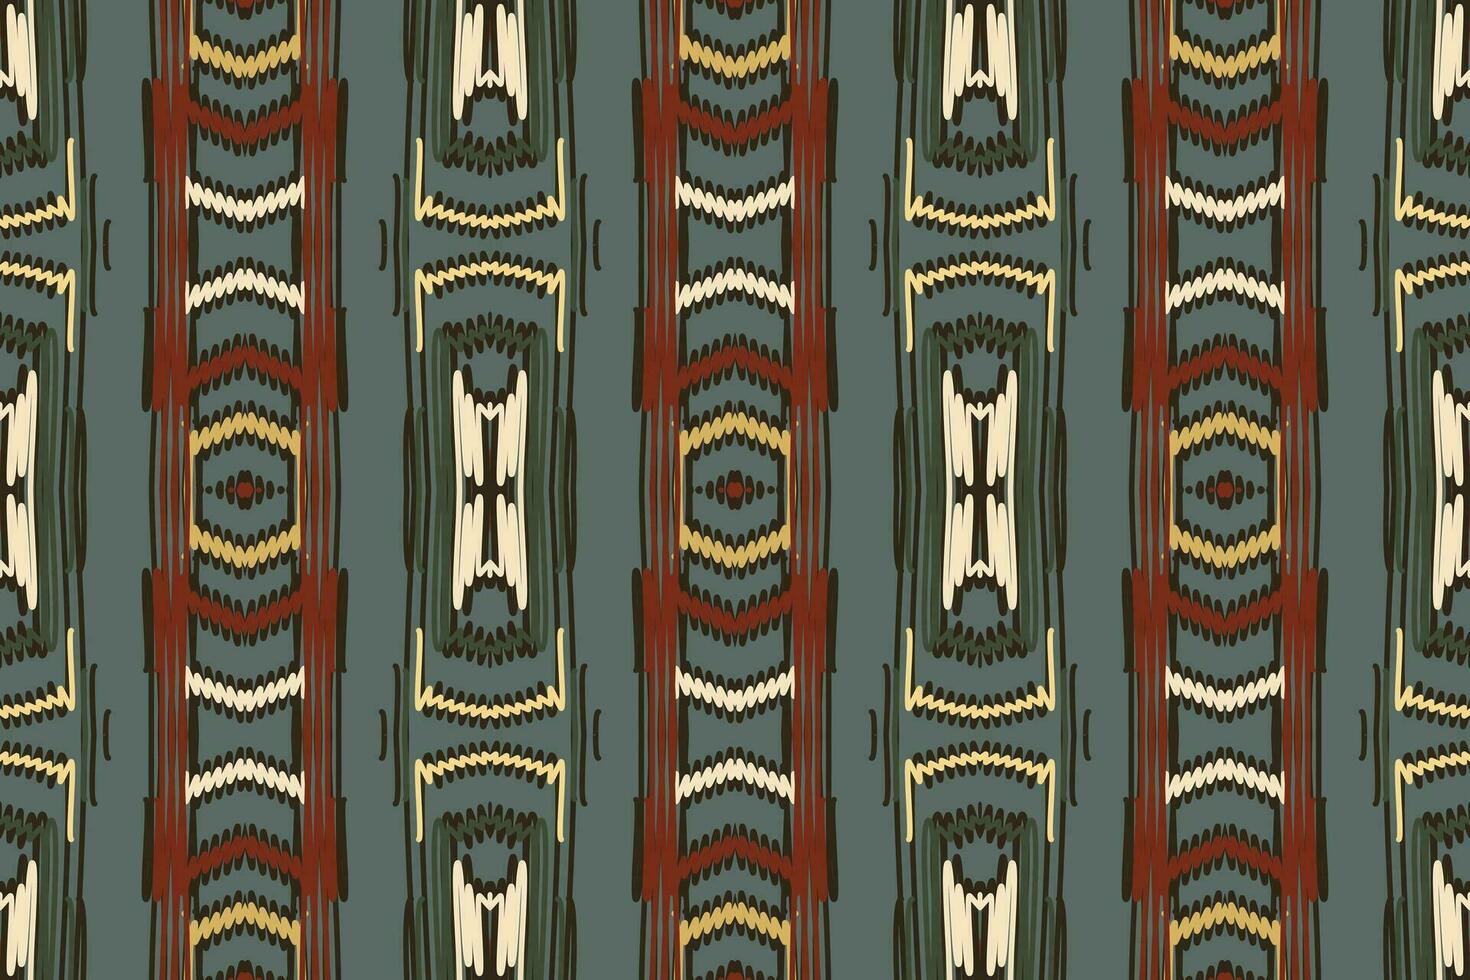 stropdas kleurstof patroon naadloos Australisch aboriginal patroon motief borduurwerk, ikat borduurwerk vector ontwerp voor afdrukken sjaal hijab patroon hoofddoek ikat vector zijde kurti model- mughal patronen